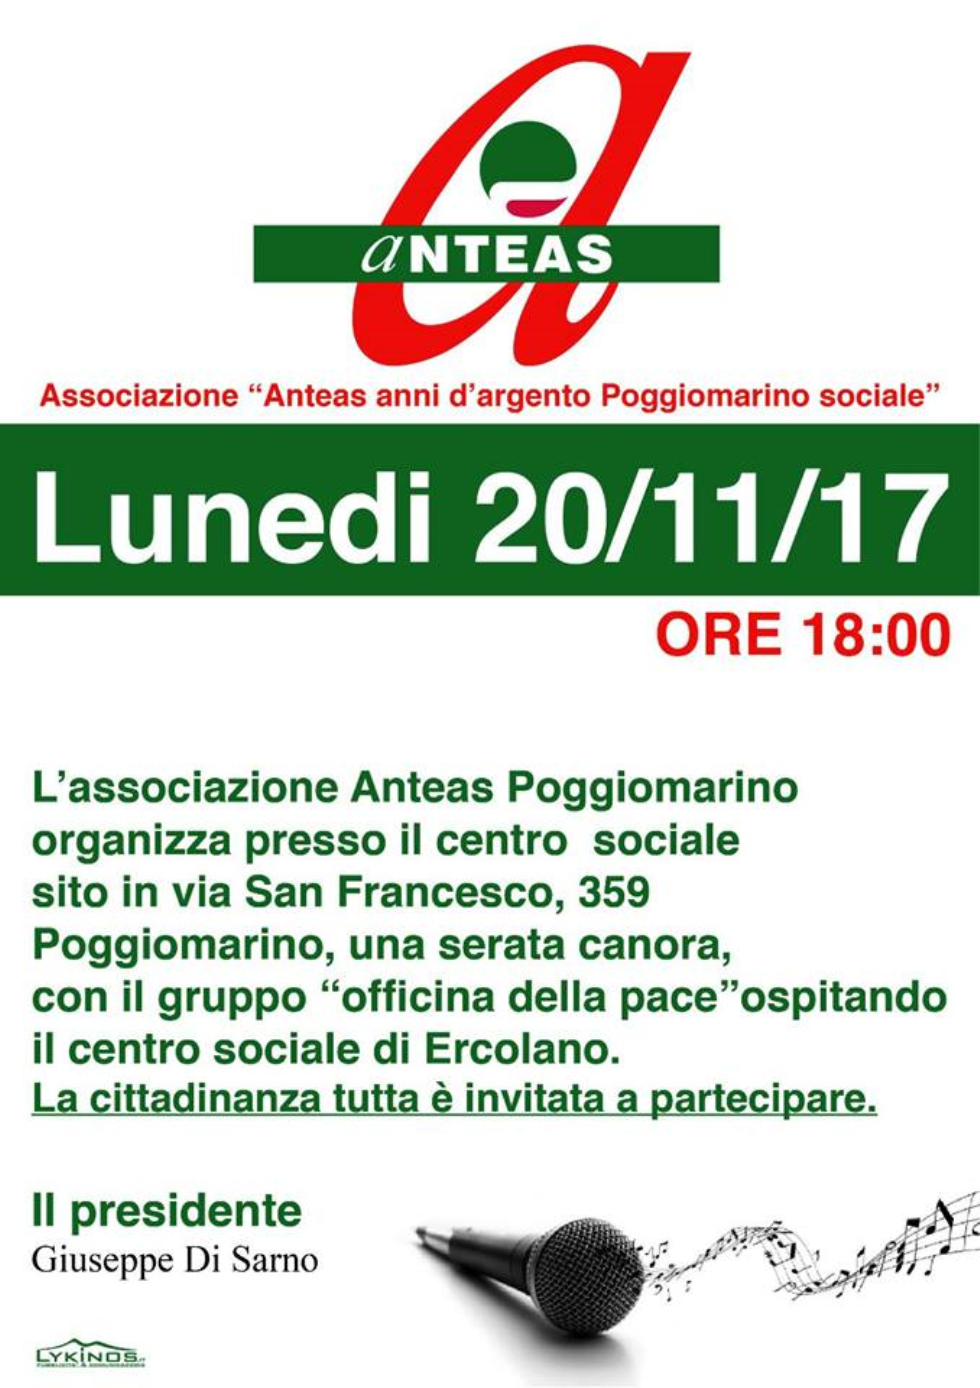 Una serata canora al centro sociale Anteas di Poggiomarino (Na) lunedì 20 novembre